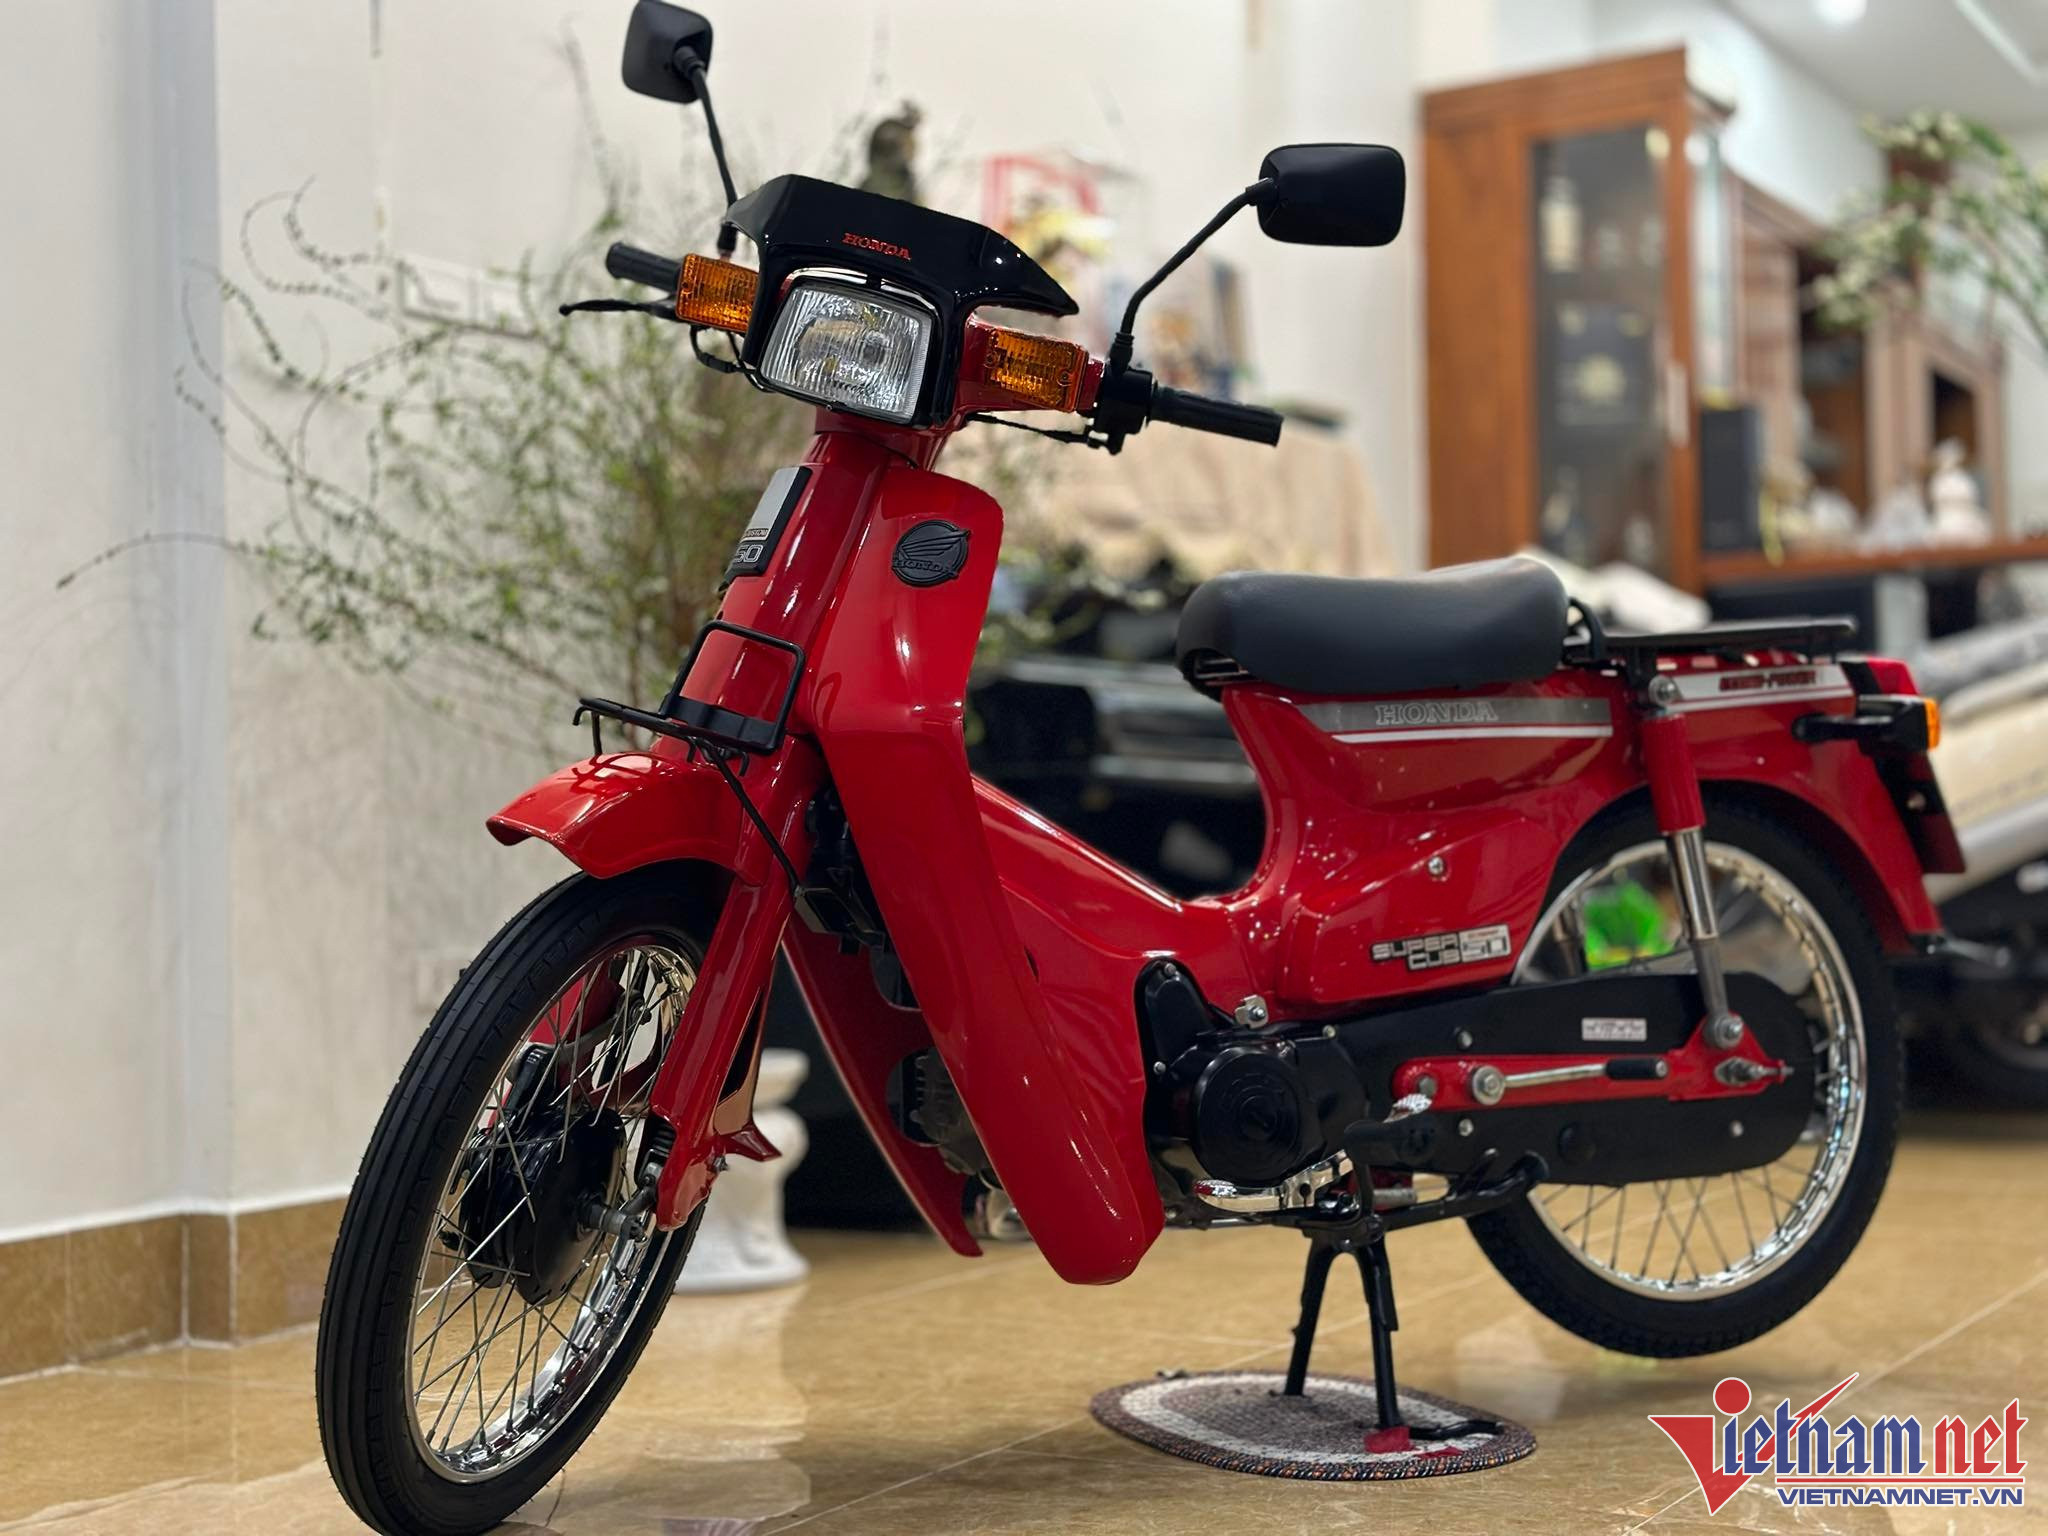 Yamaha Grande nữ hoàng xe tay ga tiết kiệm nhiên liệu nhất Việt Nam